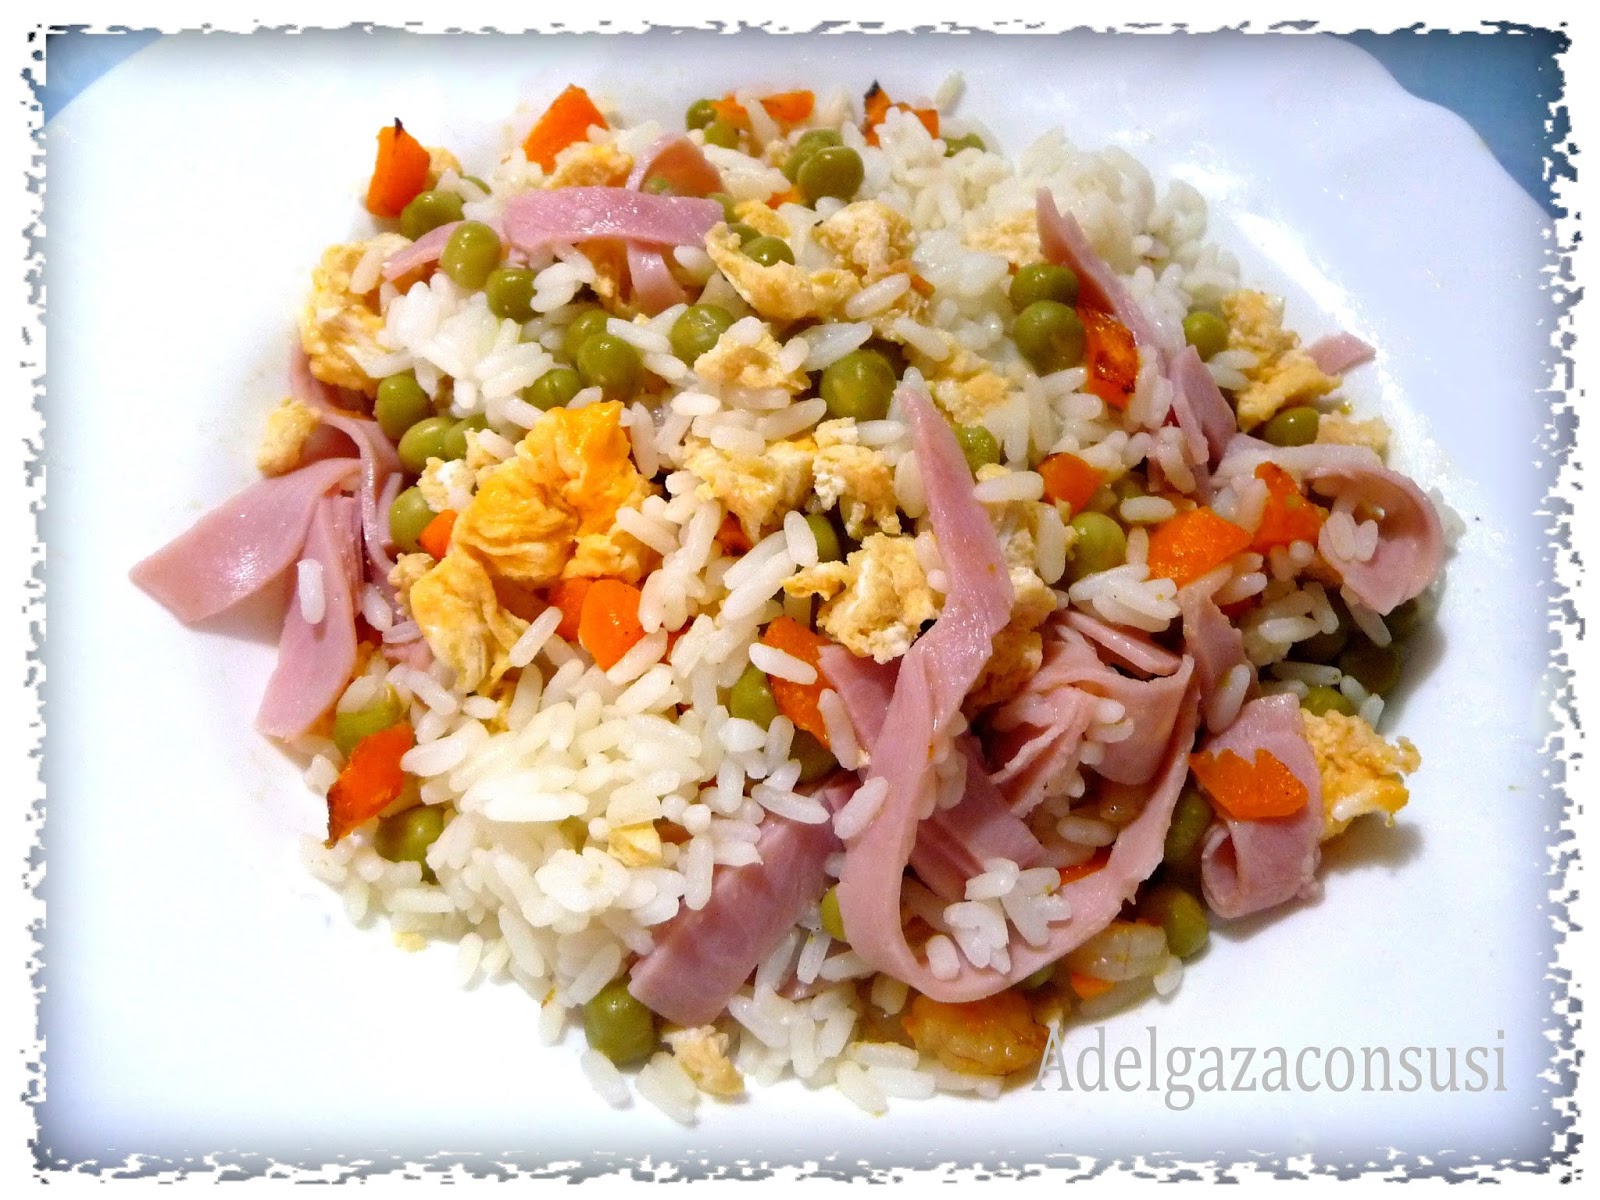 Historia del arroz tres delicias, el plato más versionado - Tapas